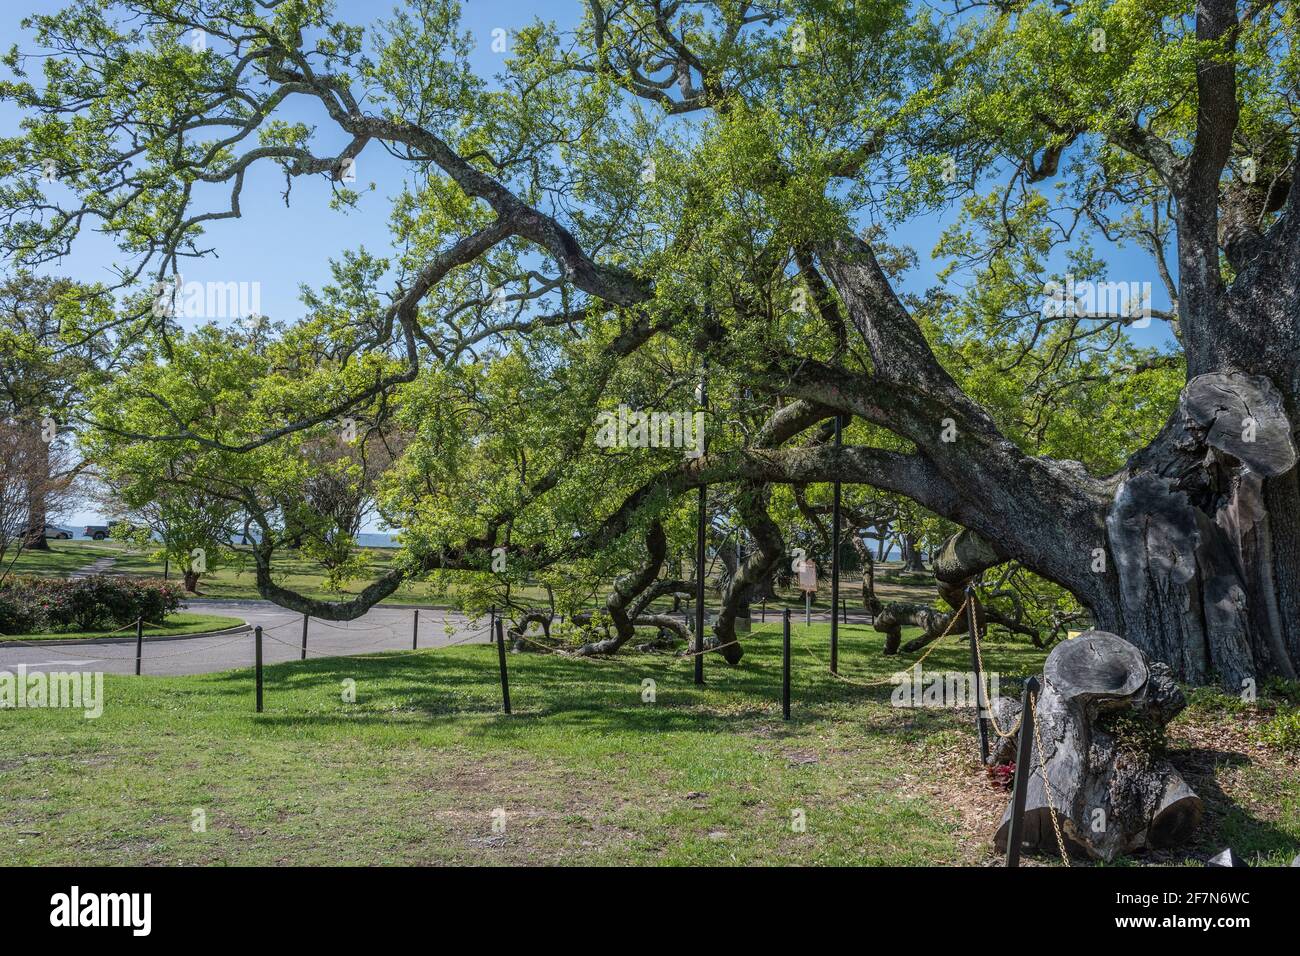 Historische Friendship Oak Tree, südliche lebende Eiche, die auf dem Campus der University of Southern Mississippi, Long Beach, MS, USA, 500 Jahre alt sein soll. Stockfoto